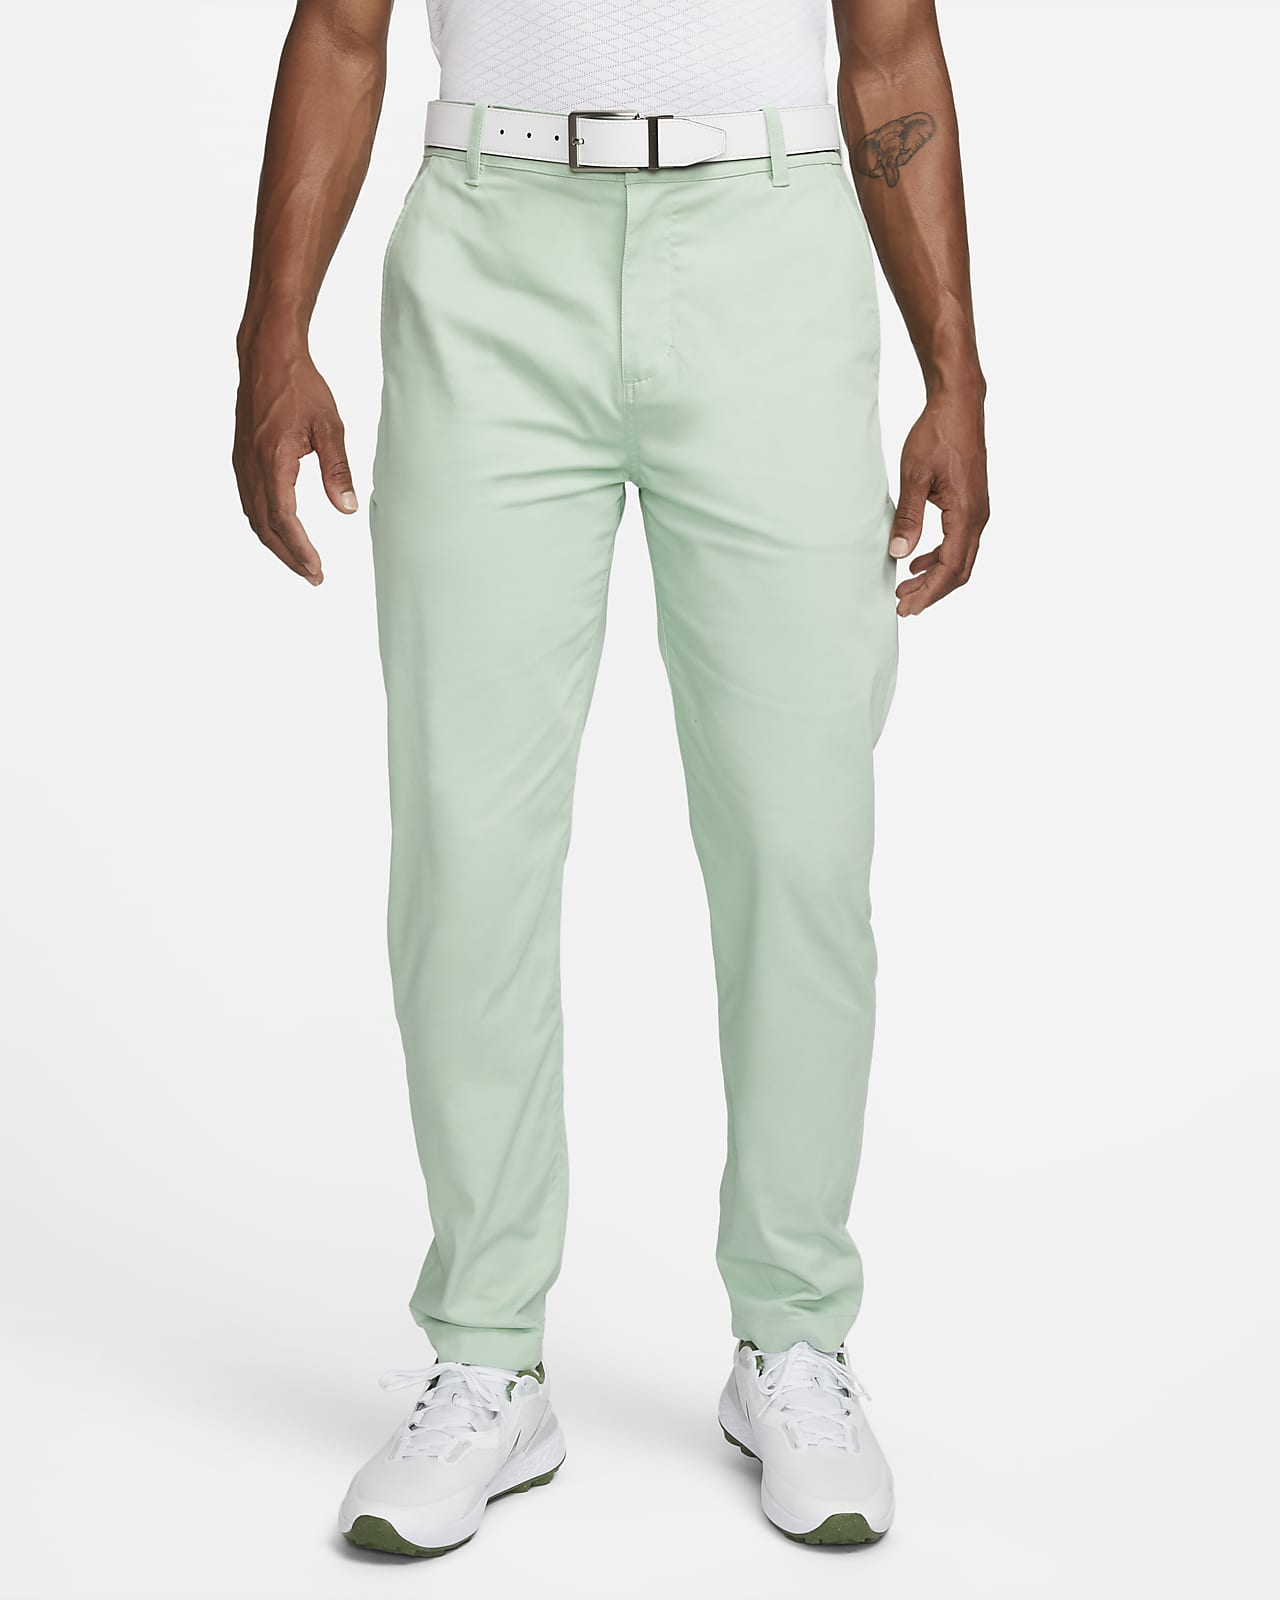 Pantalones chinos de golf de ajuste estándar para hombre Nike Dri-FIT UV